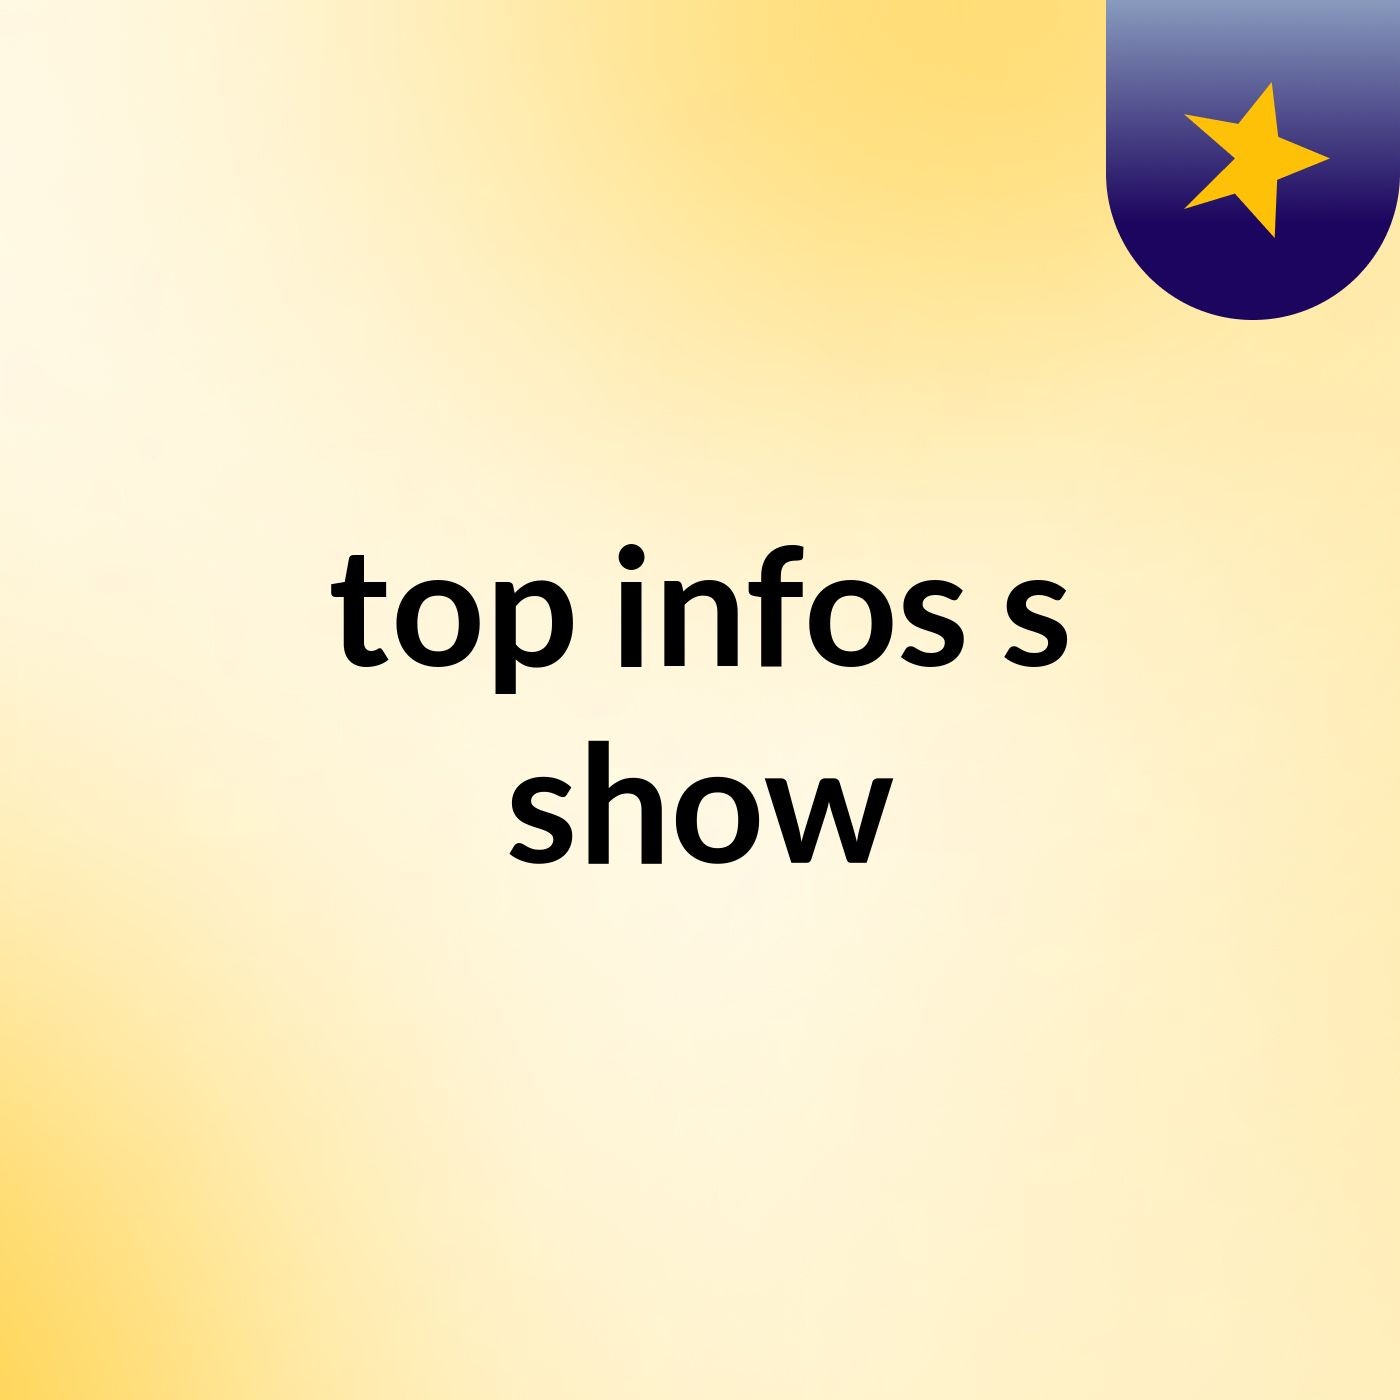 top infos's show